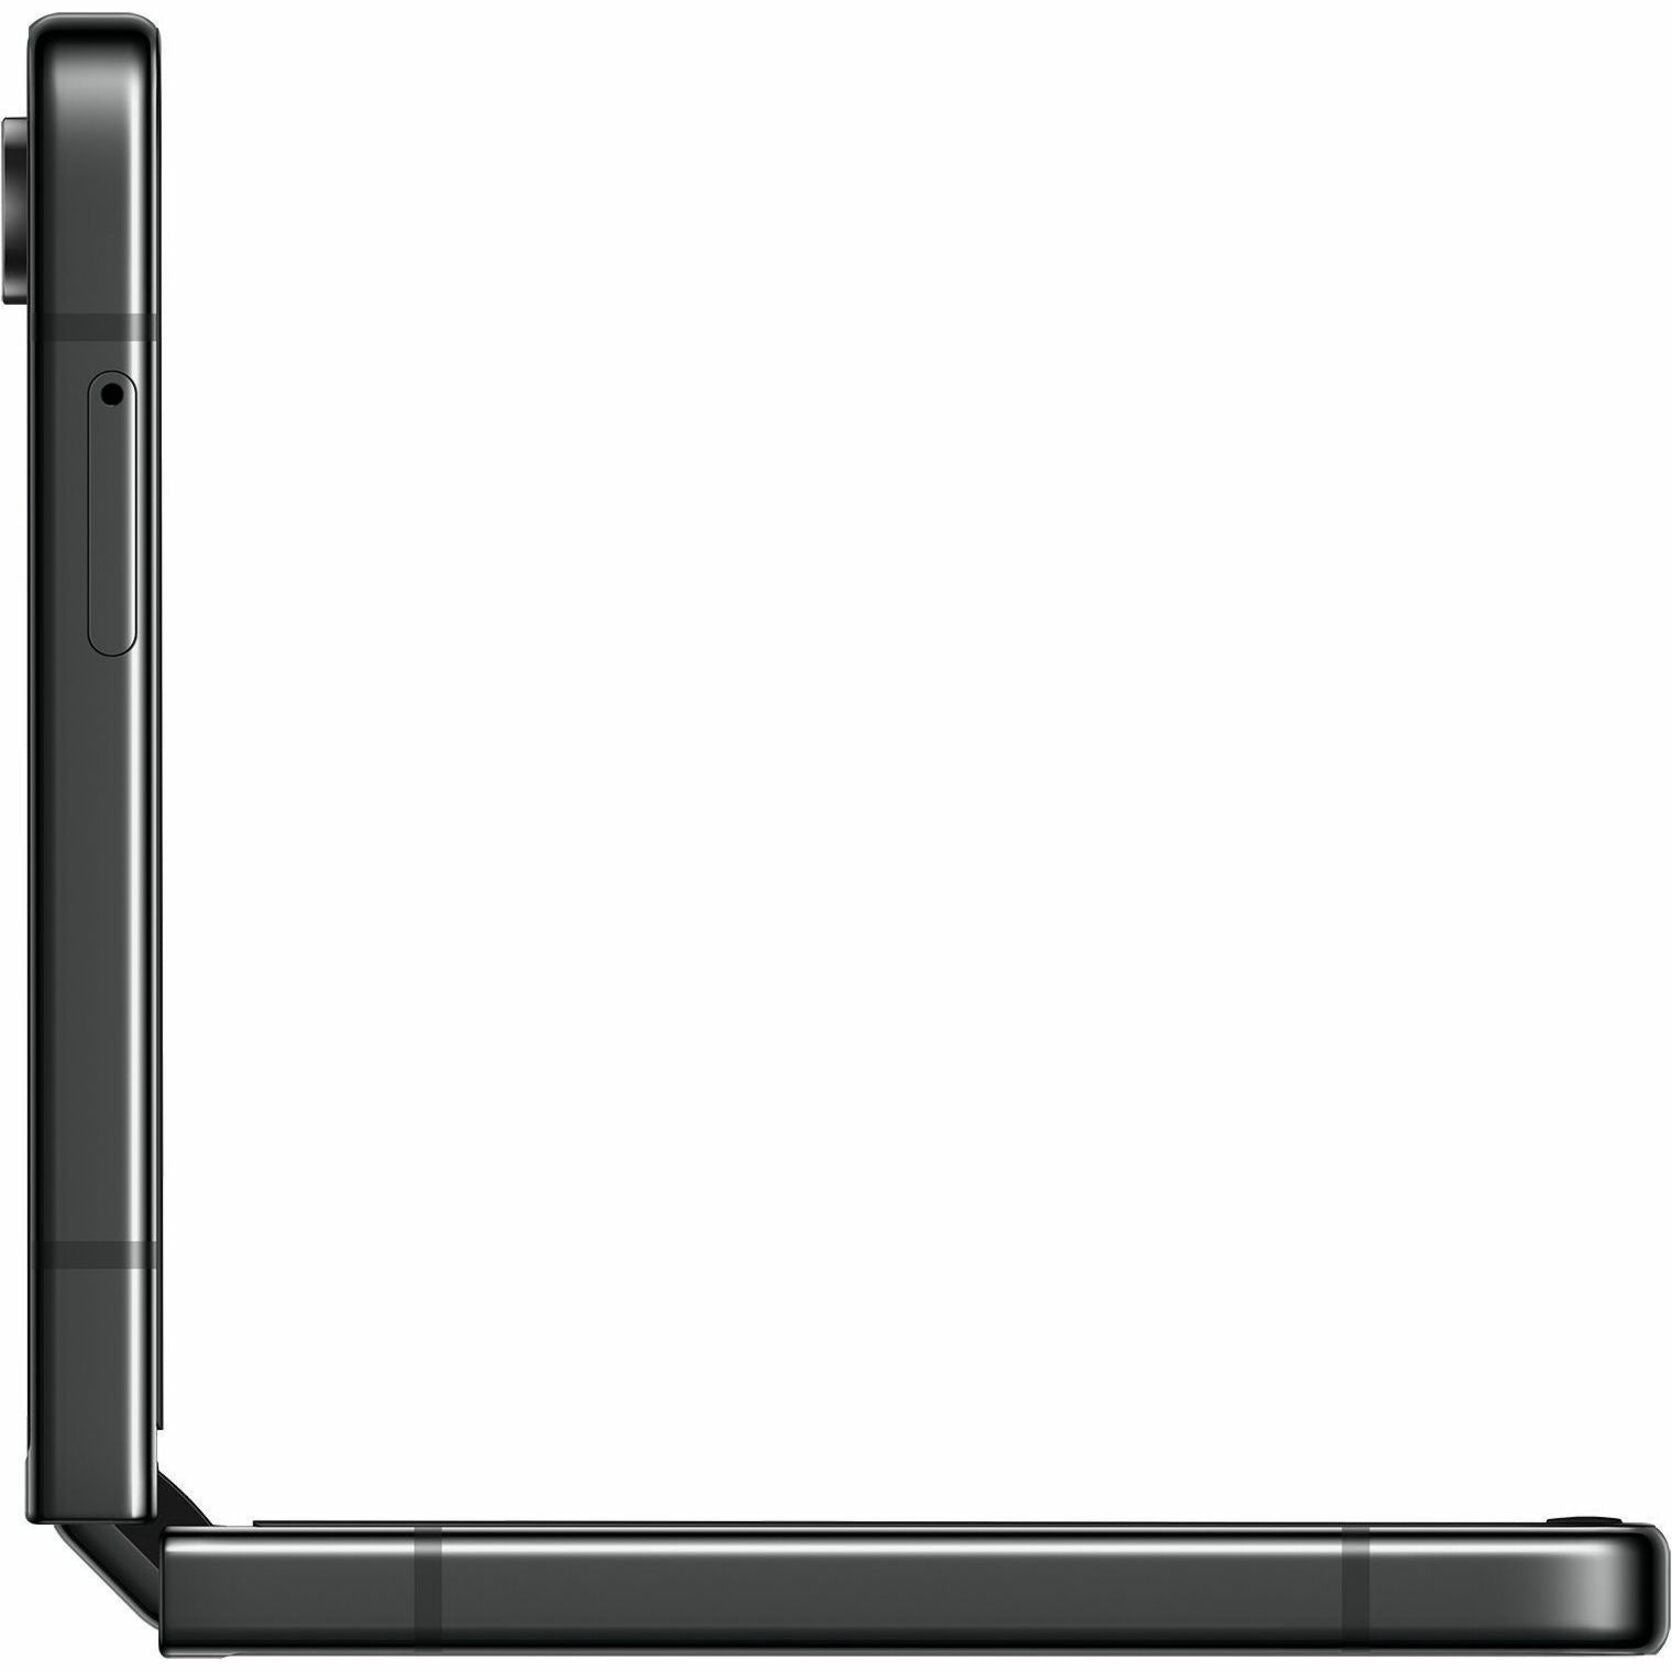 Samsung SM-F731UZAAXAA Galaxy Z Flip5 SM-F731U Smartphone, Unlocked Graphite, 8/256GB